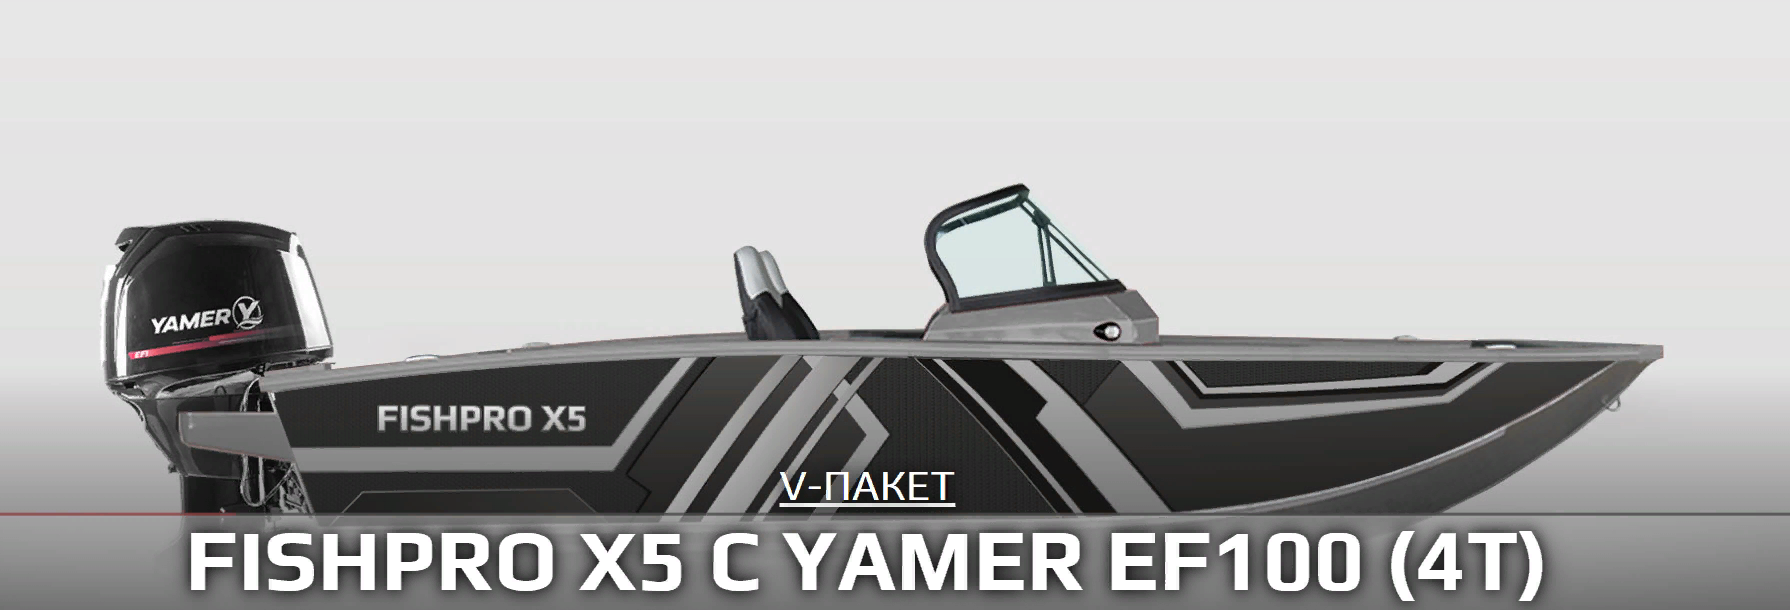 FISHPRO X5 c YAMER EF100